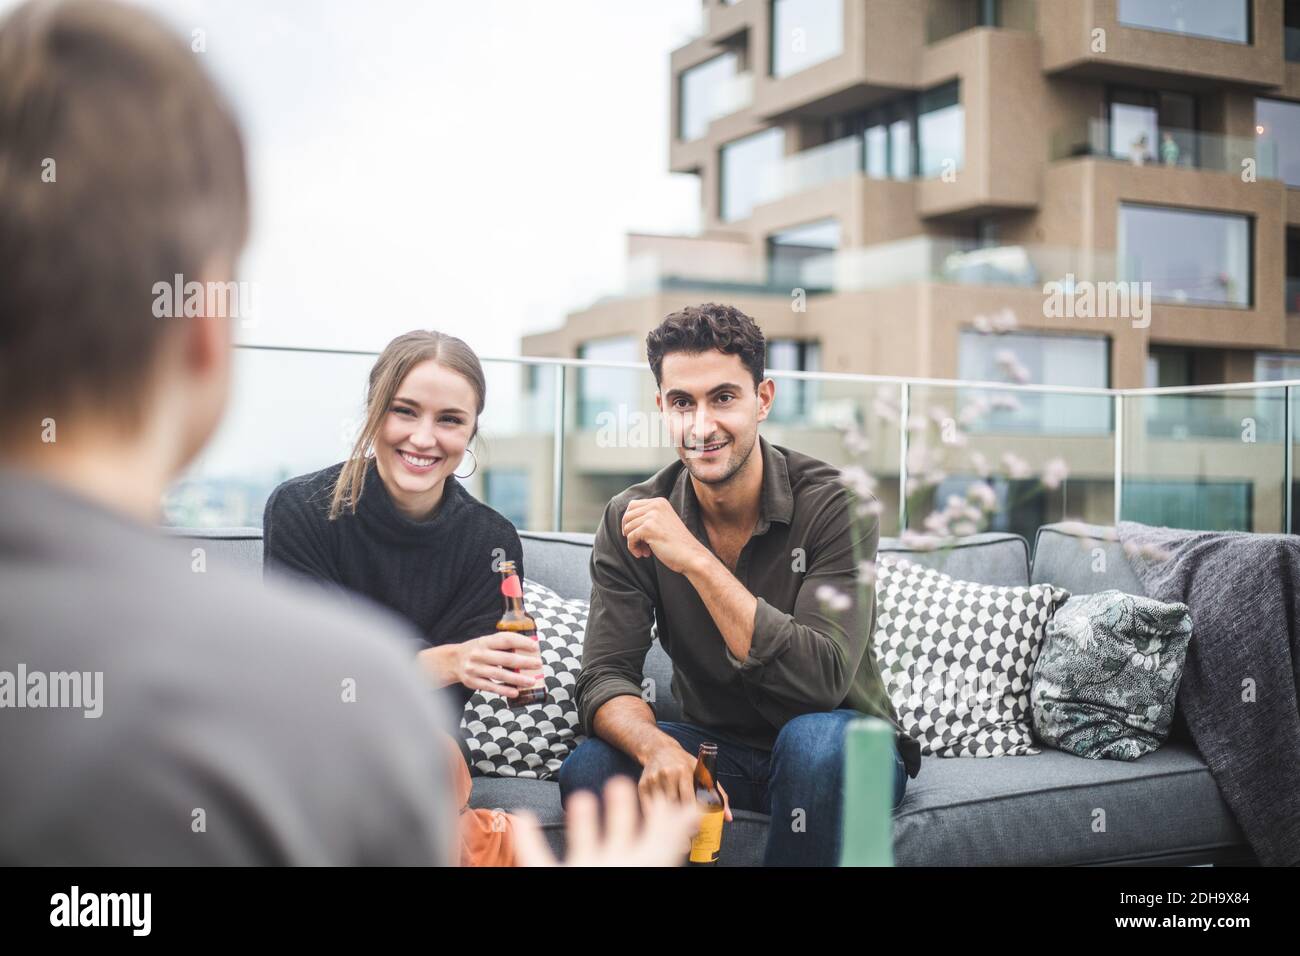 Homme souriant et femme regardant une amie pendant qu'elle est assise sur le canapé pendant la fête sur la terrasse du bâtiment Banque D'Images